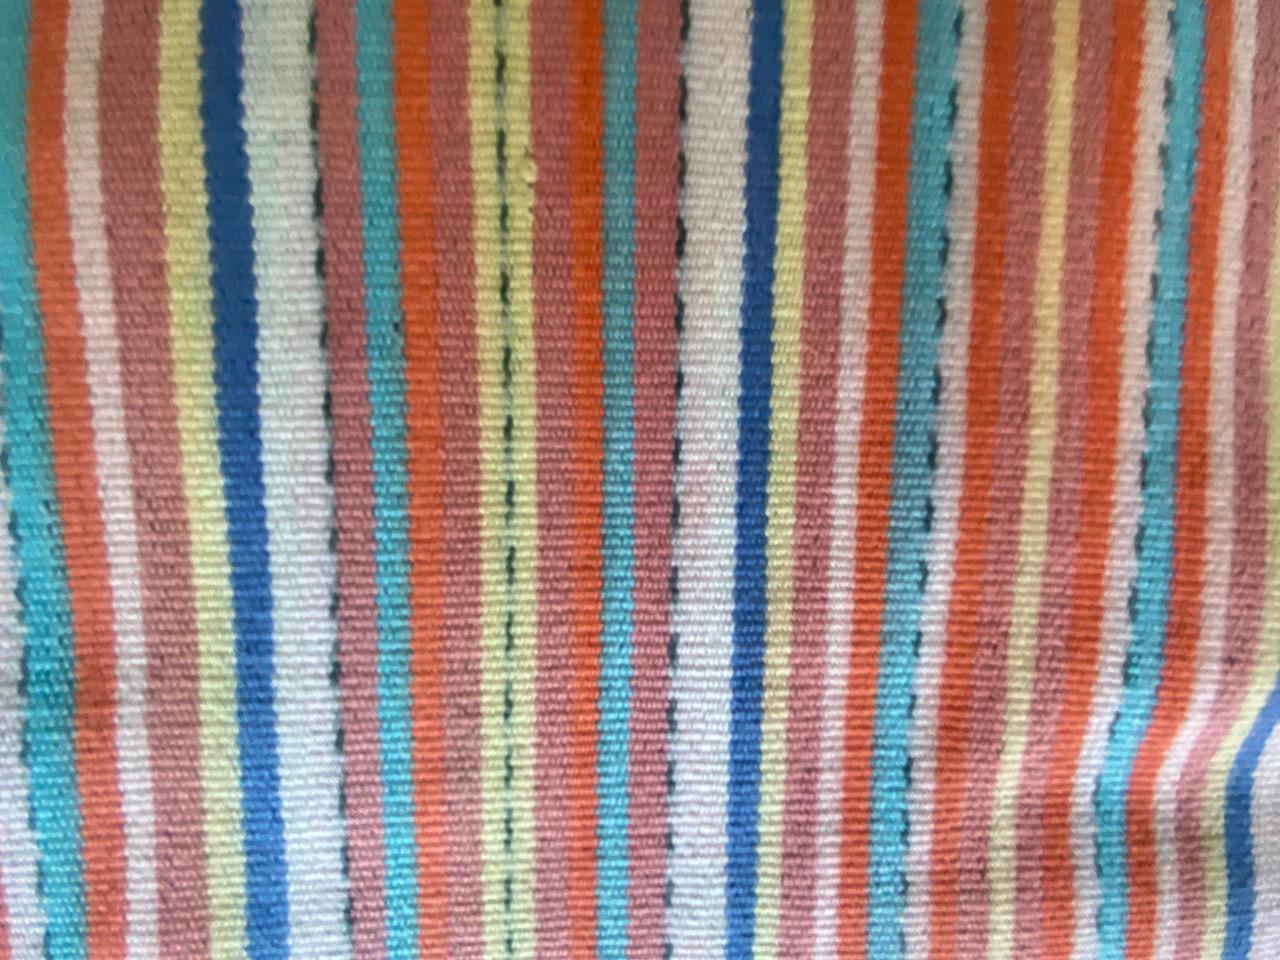 Atemberaubende Farben in diesem handgewebten Textil von der Insel Sumba im Osten Indonesiens. Die Streifen wirken modern und harmonieren doch gut mit dem traditionellen Mittelteil. Ikat ist eine alte Technik, mit der Textilien mit Mustern versehen